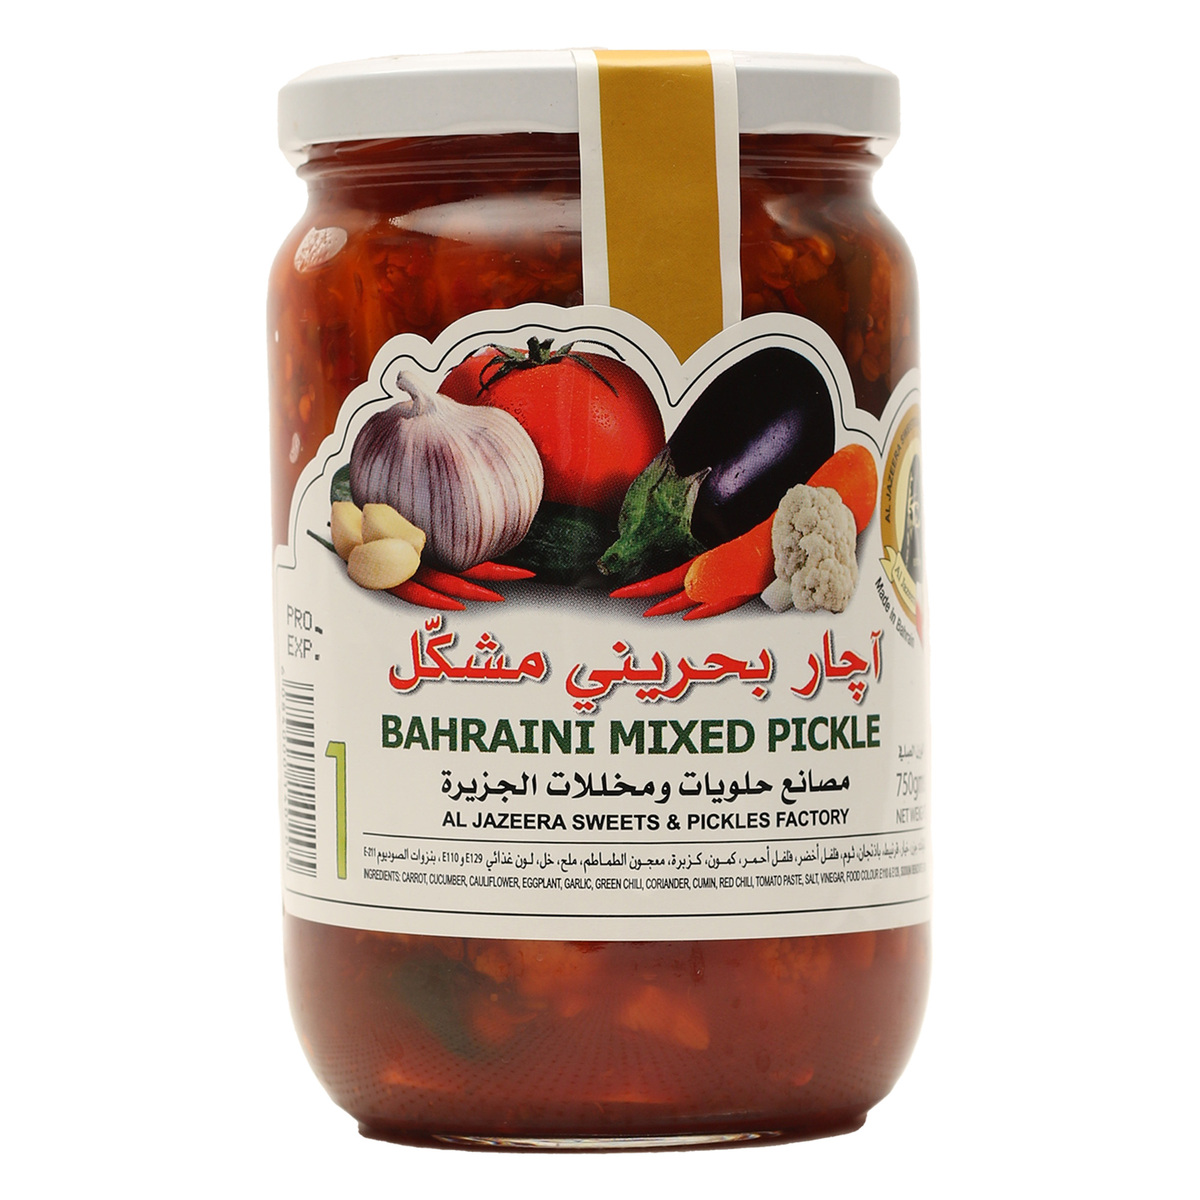 Al Jazeera Bahraini Mixed Pickle 750g